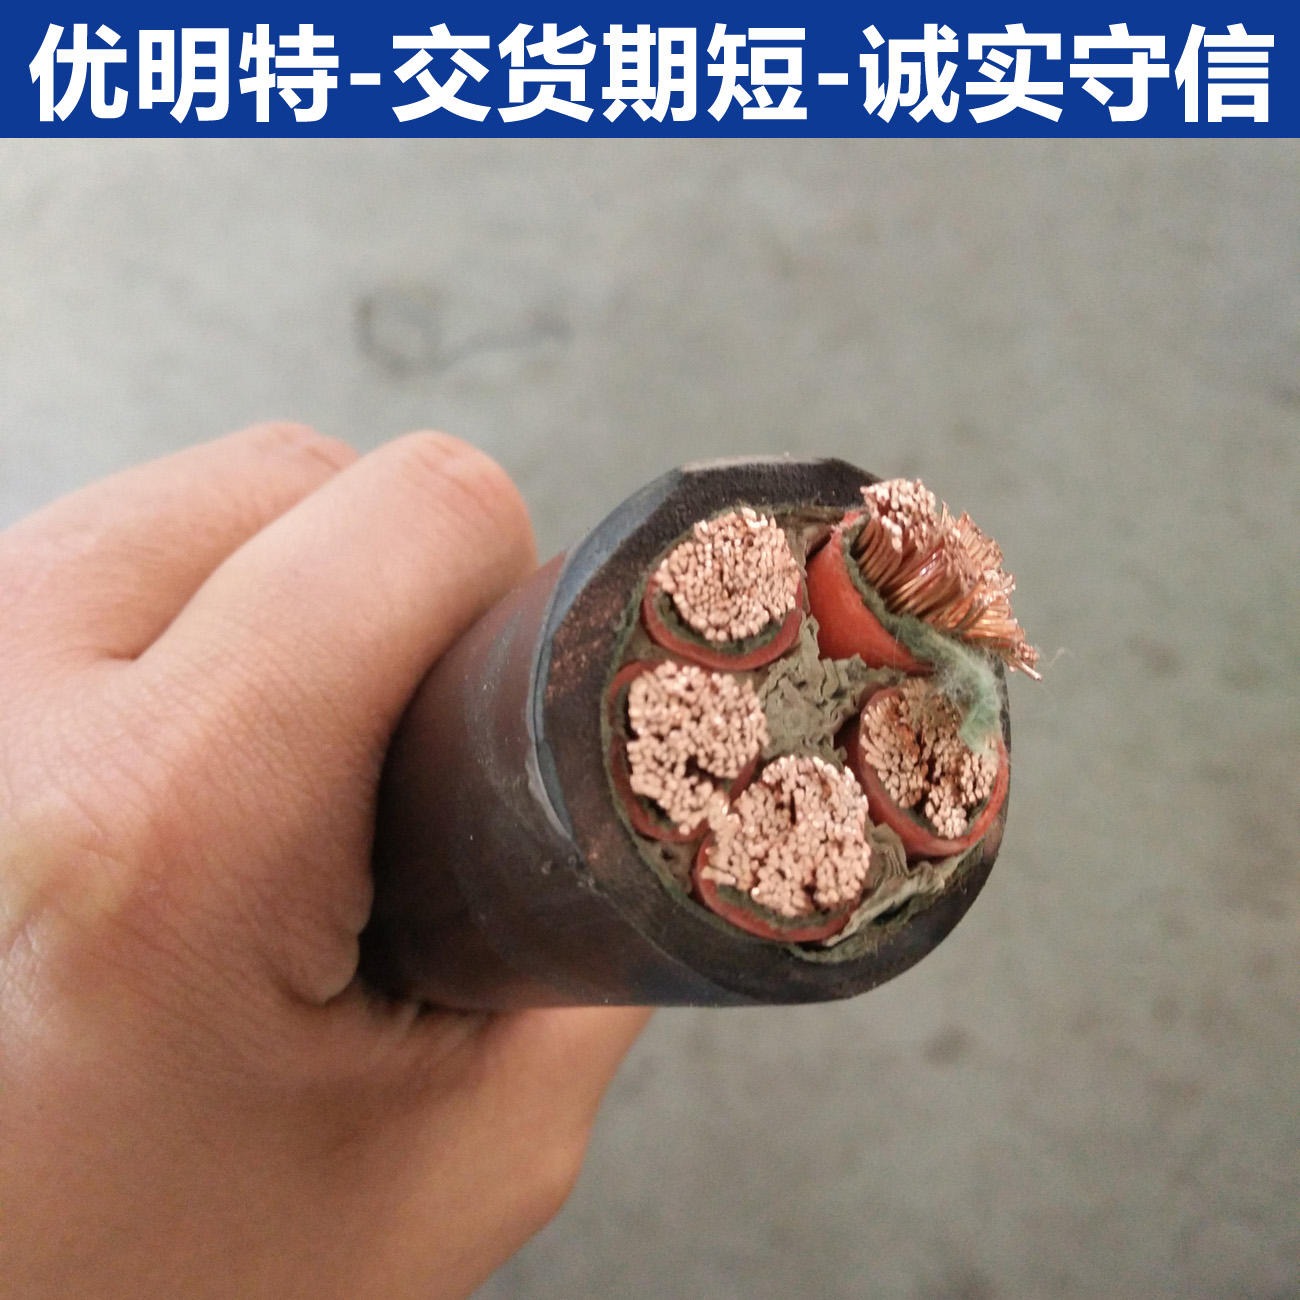 优明特 高温硅胶氟塑料电缆 YGC-F46RP电缆 YGC-F46R电缆 生产厂家 现货库存